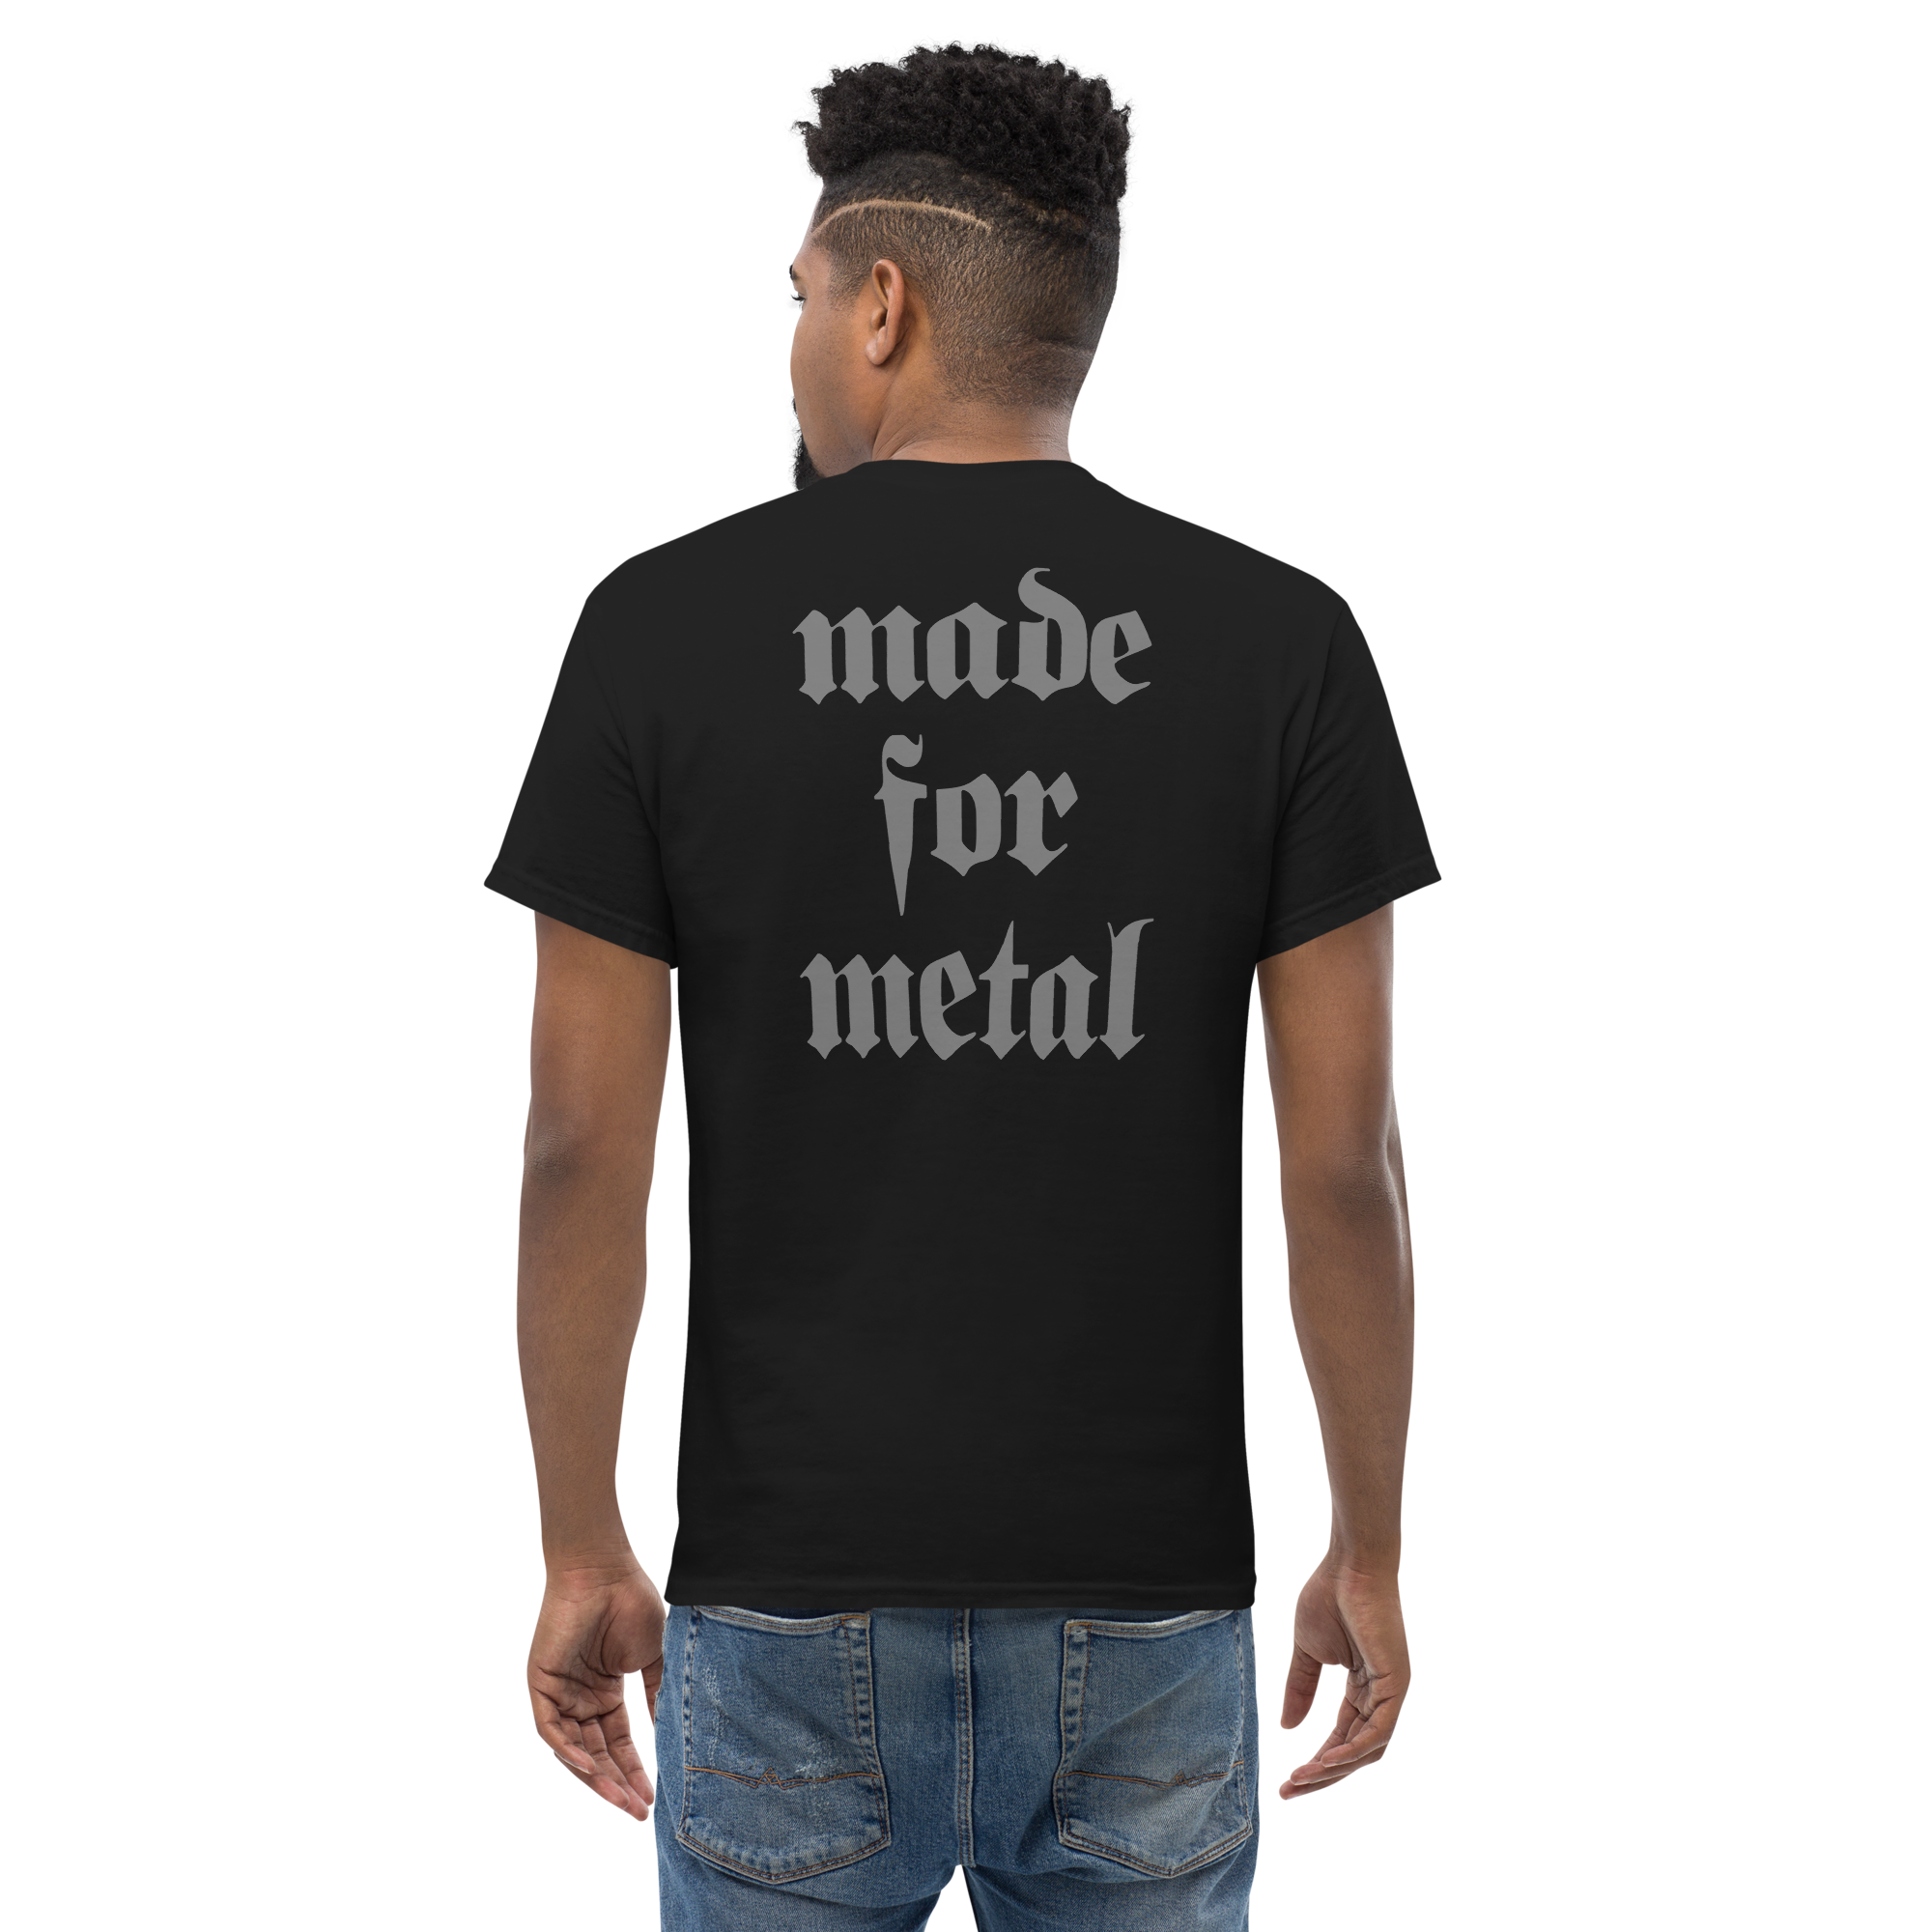 Blakhart Guitars - Made for Metal Matte Gray Short Sleeve T-shirt